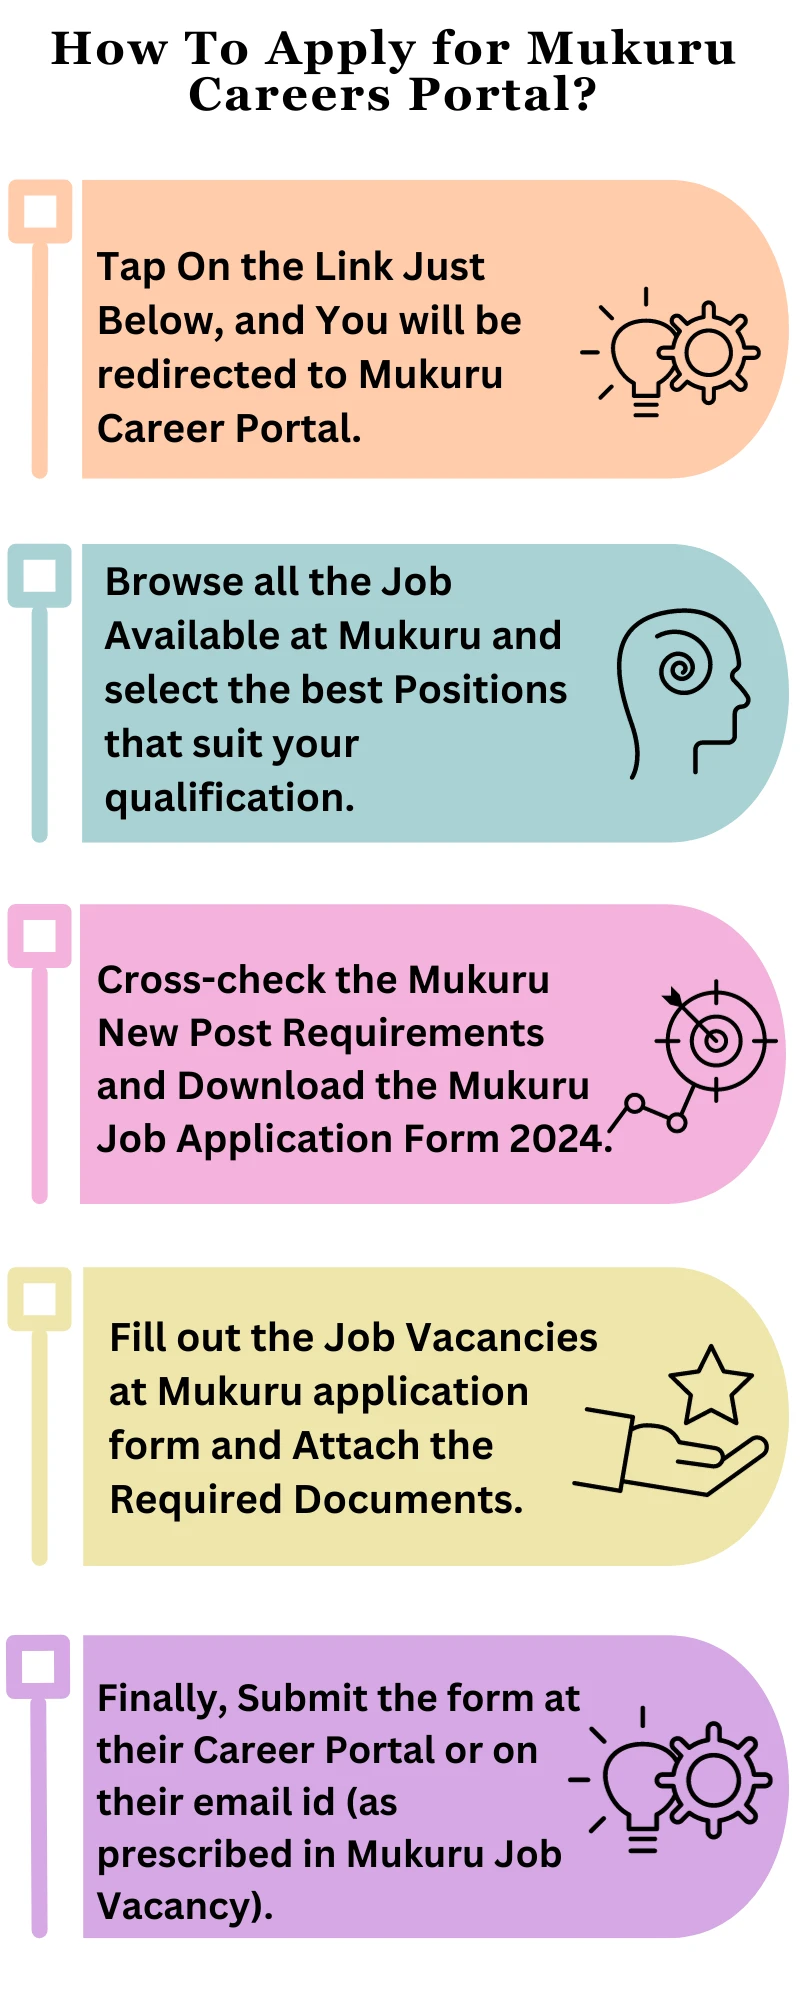 How To Apply for Mukuru Careers Portal?